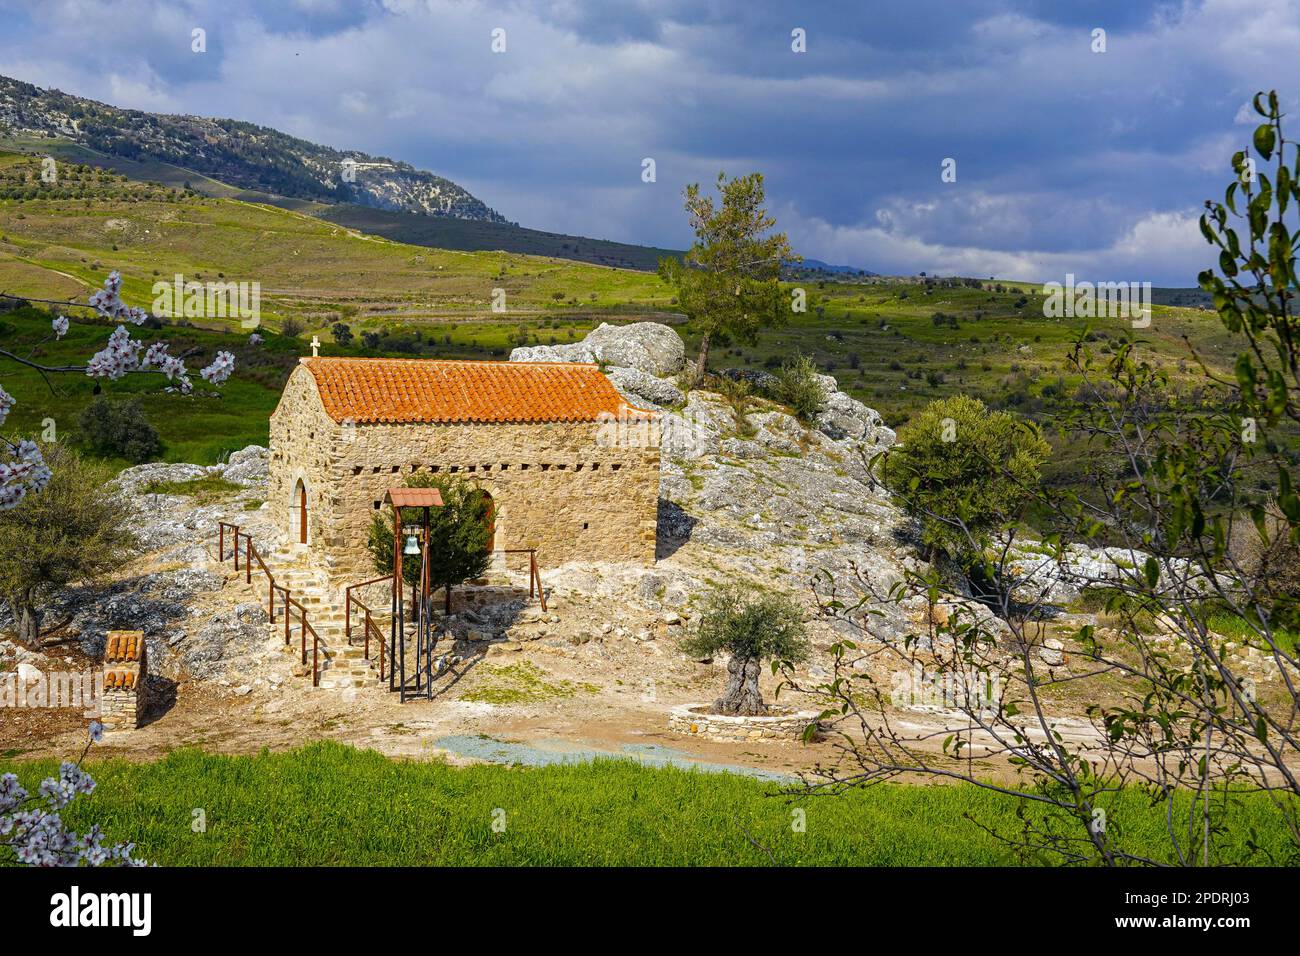 Petite chapelle par rocher avec toit de tuiles rouges et cloche, à l'intérieur des terres de la région de Phaphos Pafos de Chypre en hiver, soleil d'hiver Banque D'Images